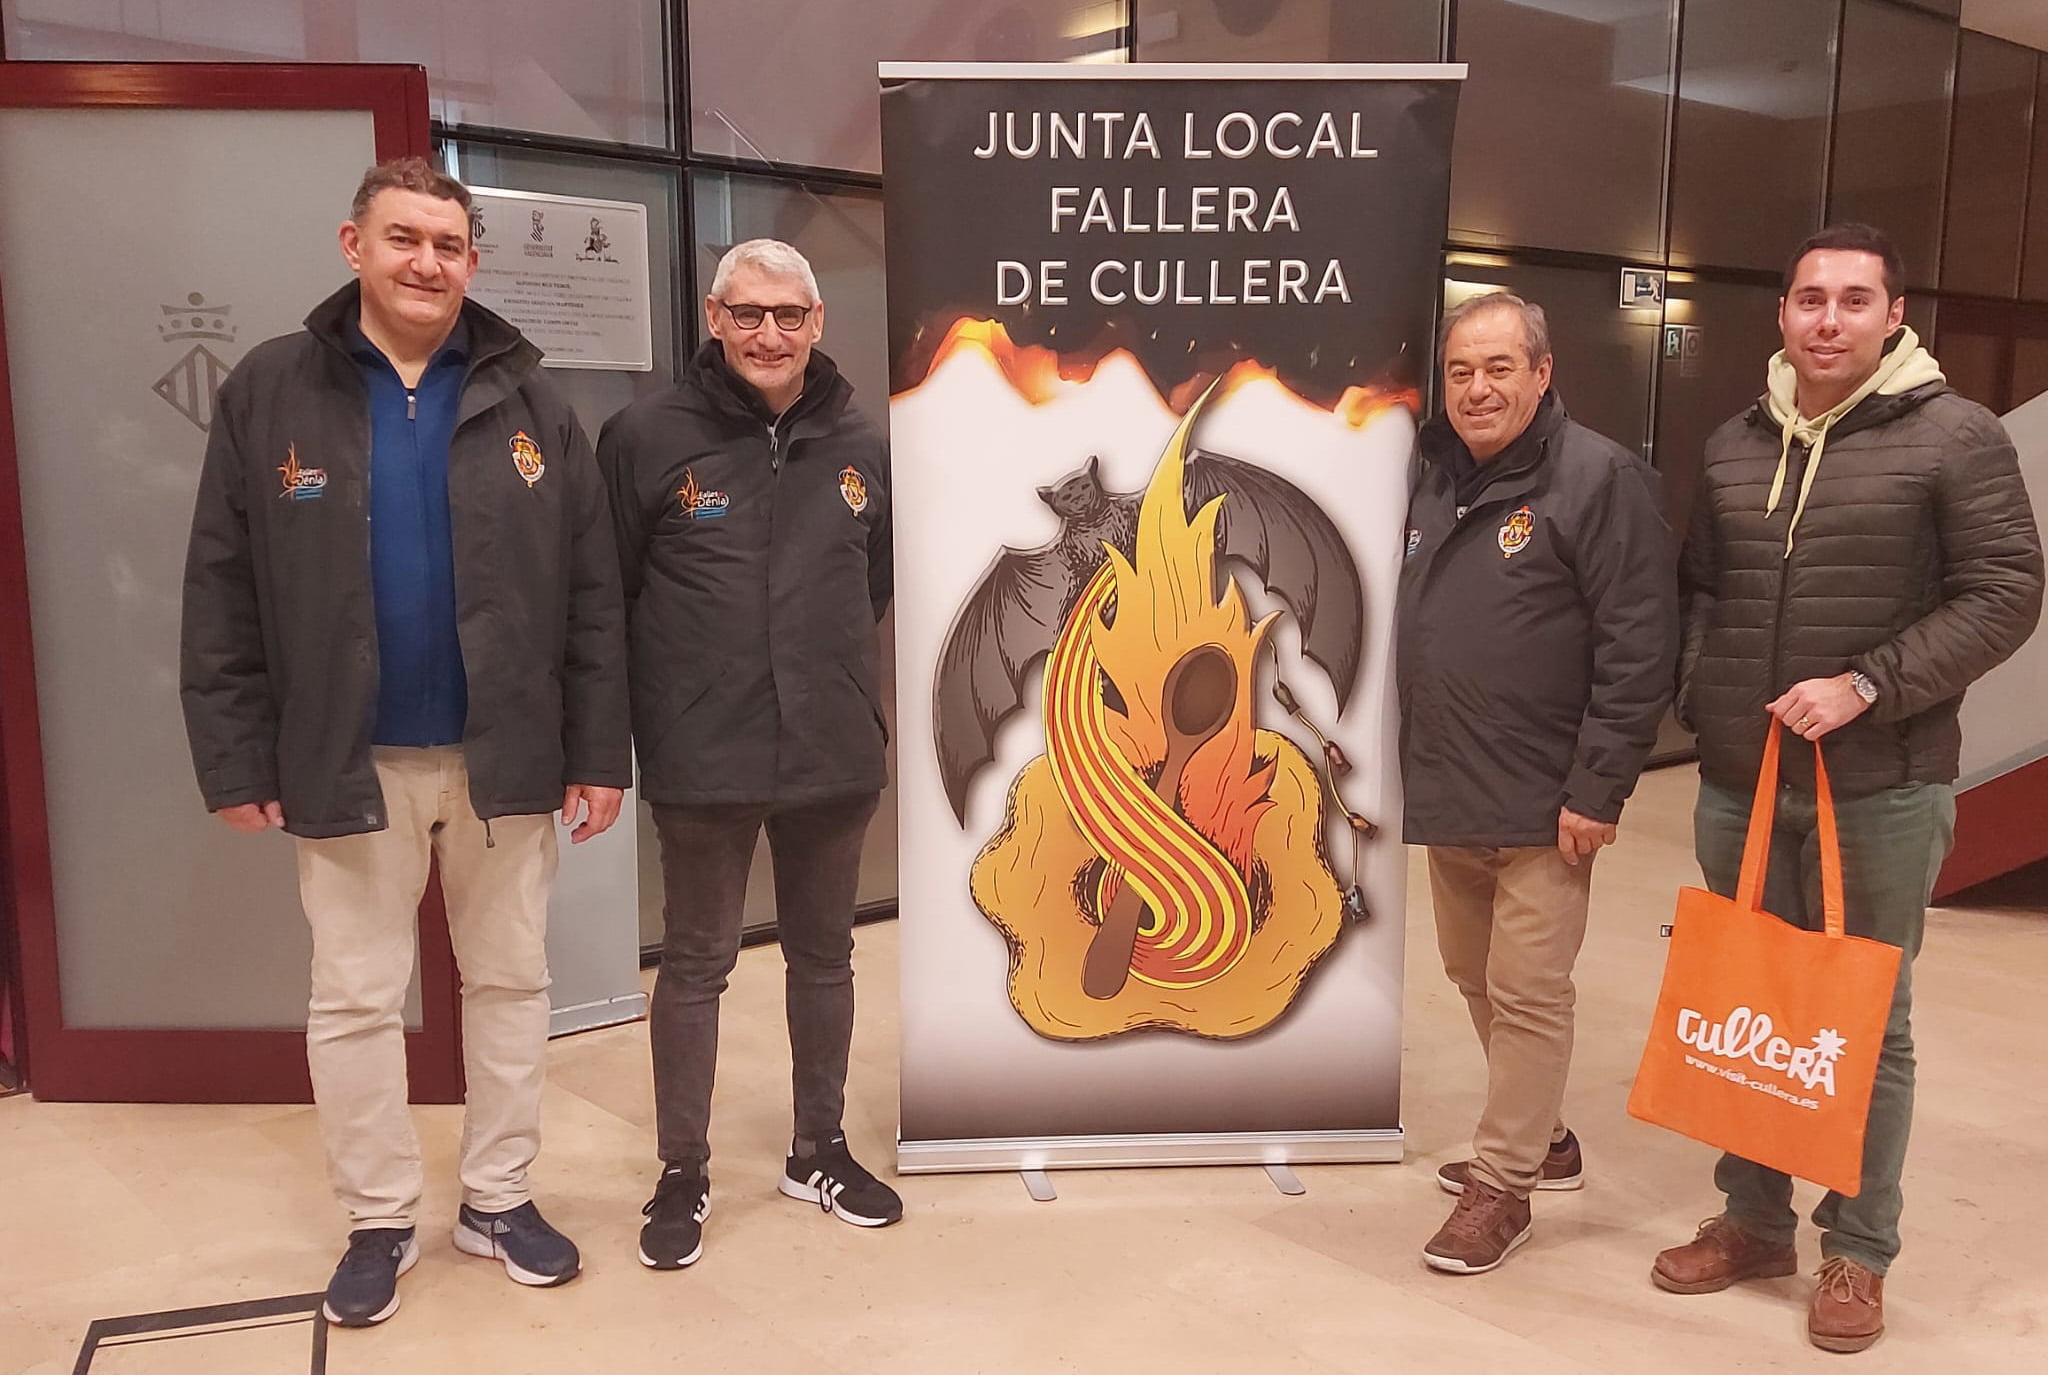 Miembros de la Junta Local Fallera de Dénia en Cullera